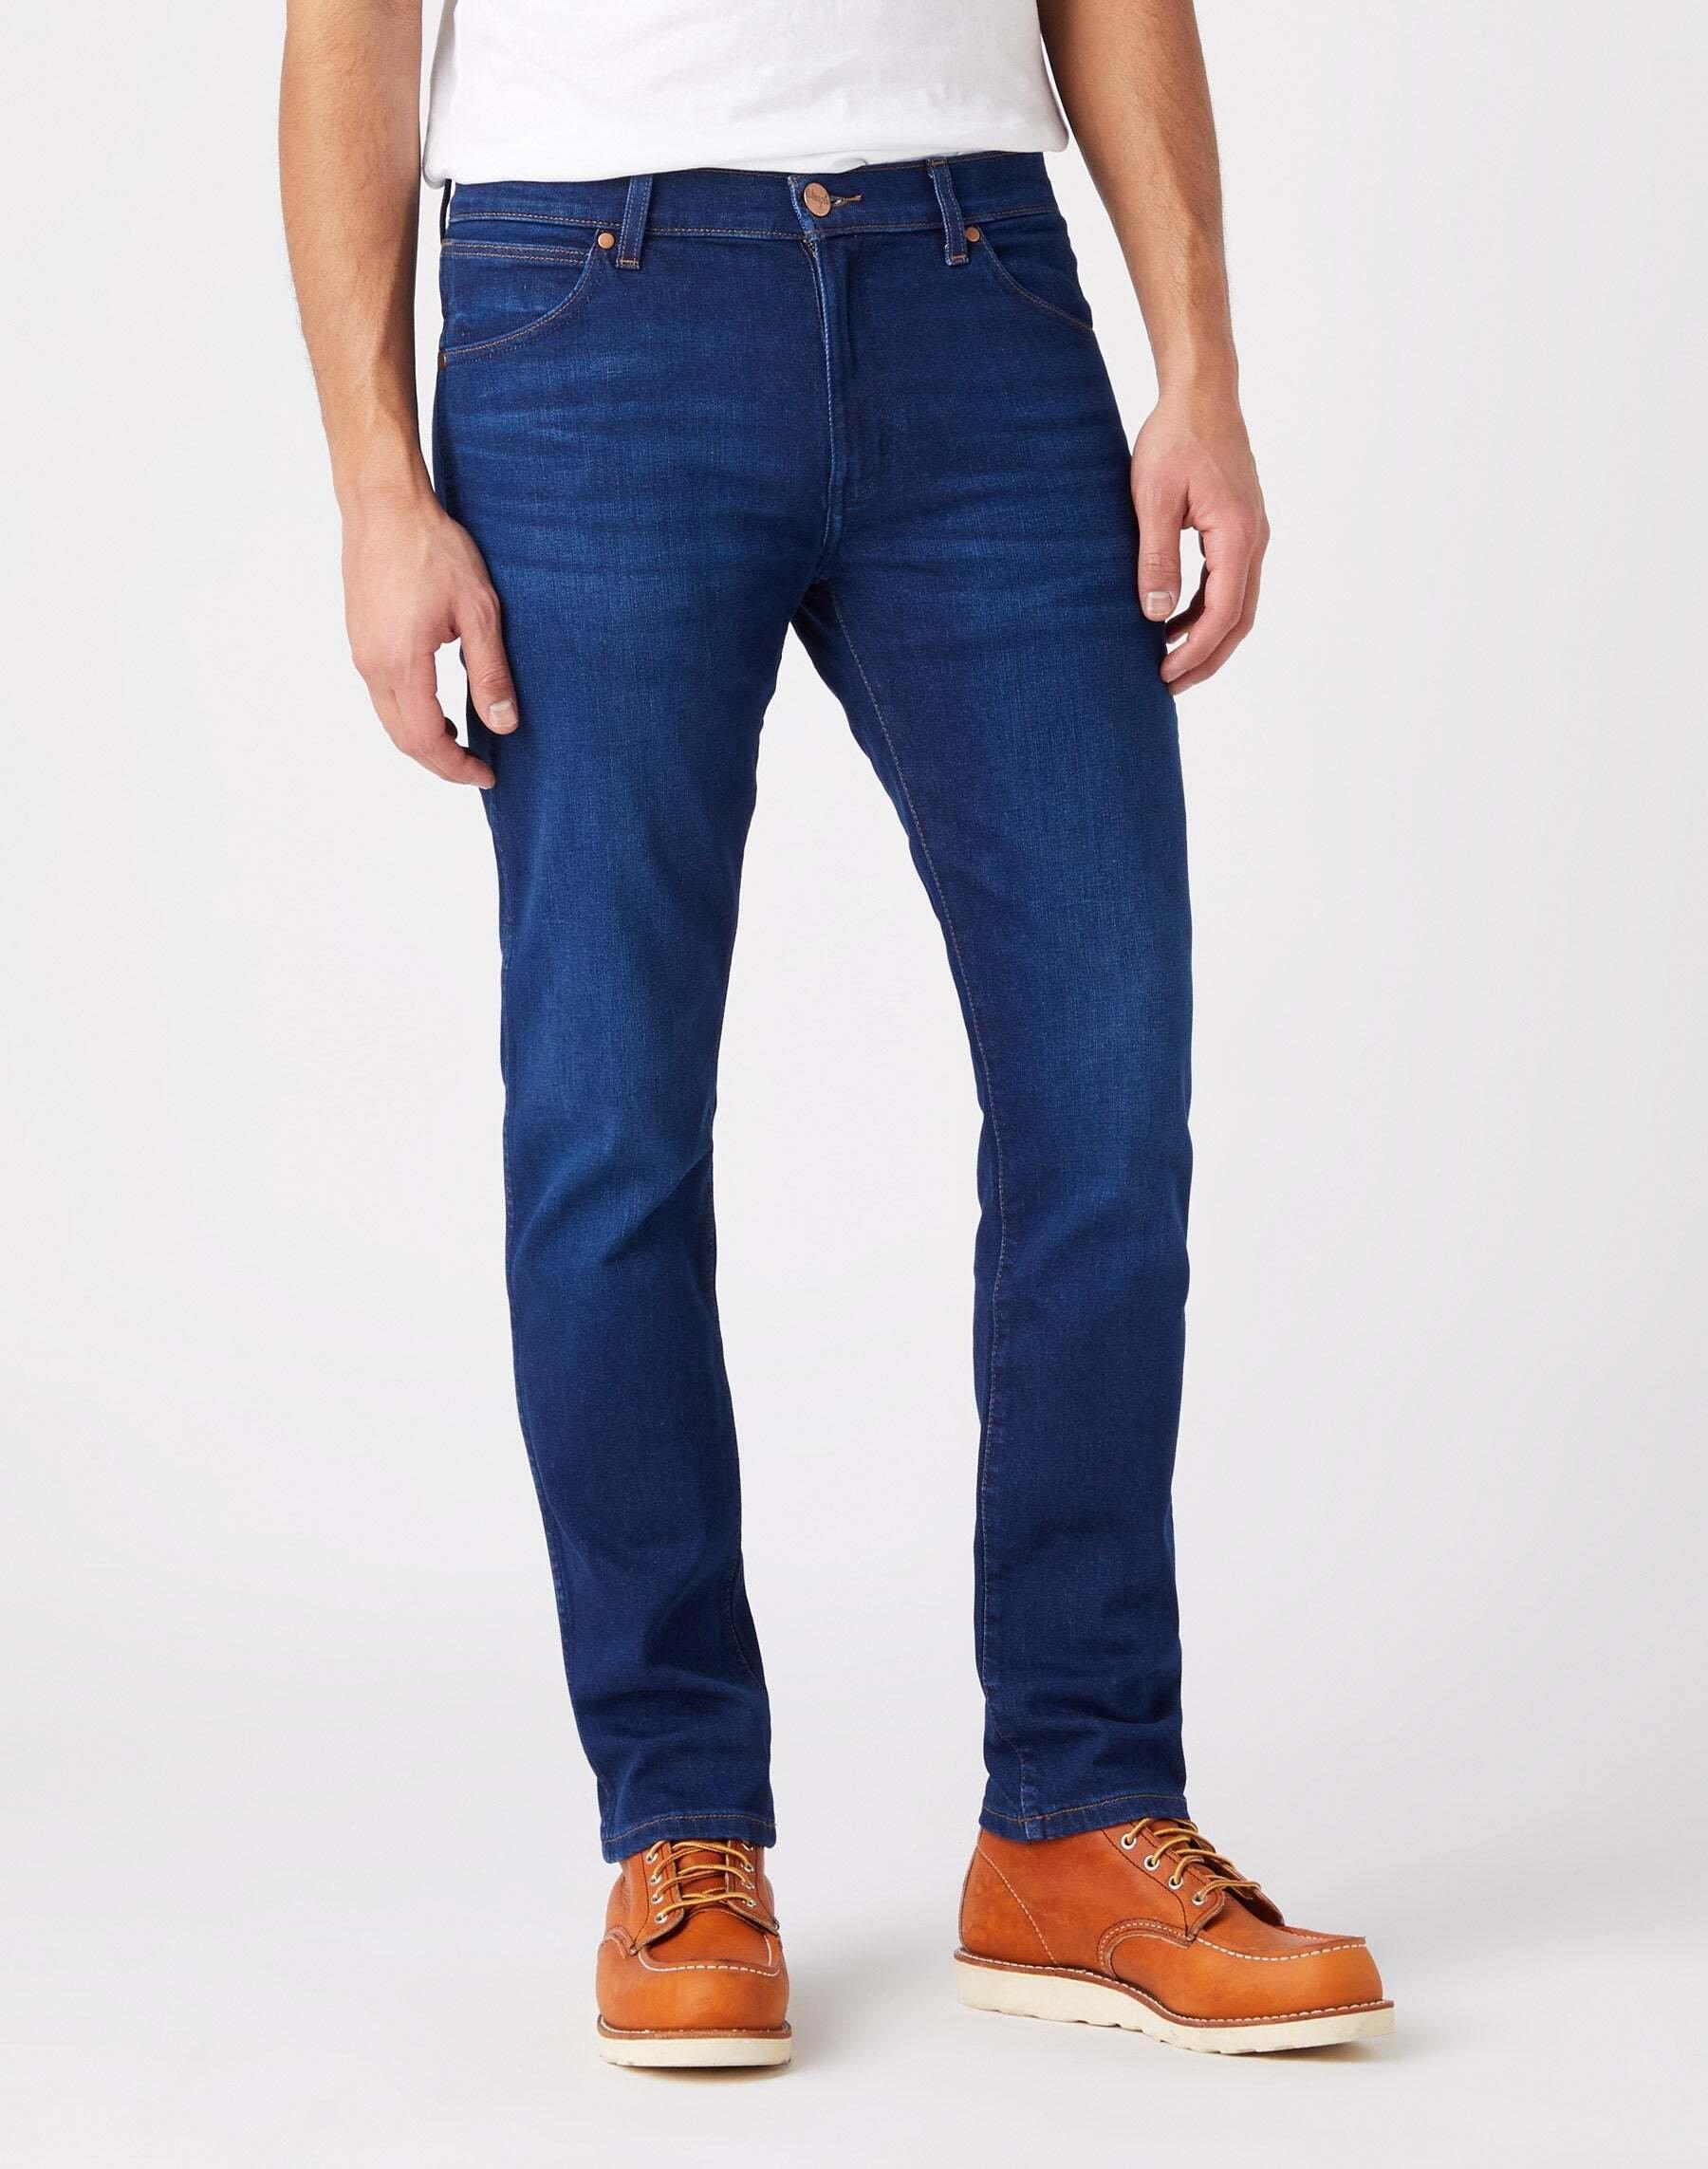 Jeans Slim Fit Larston Herren Blau Denim L32/W29 von Wrangler